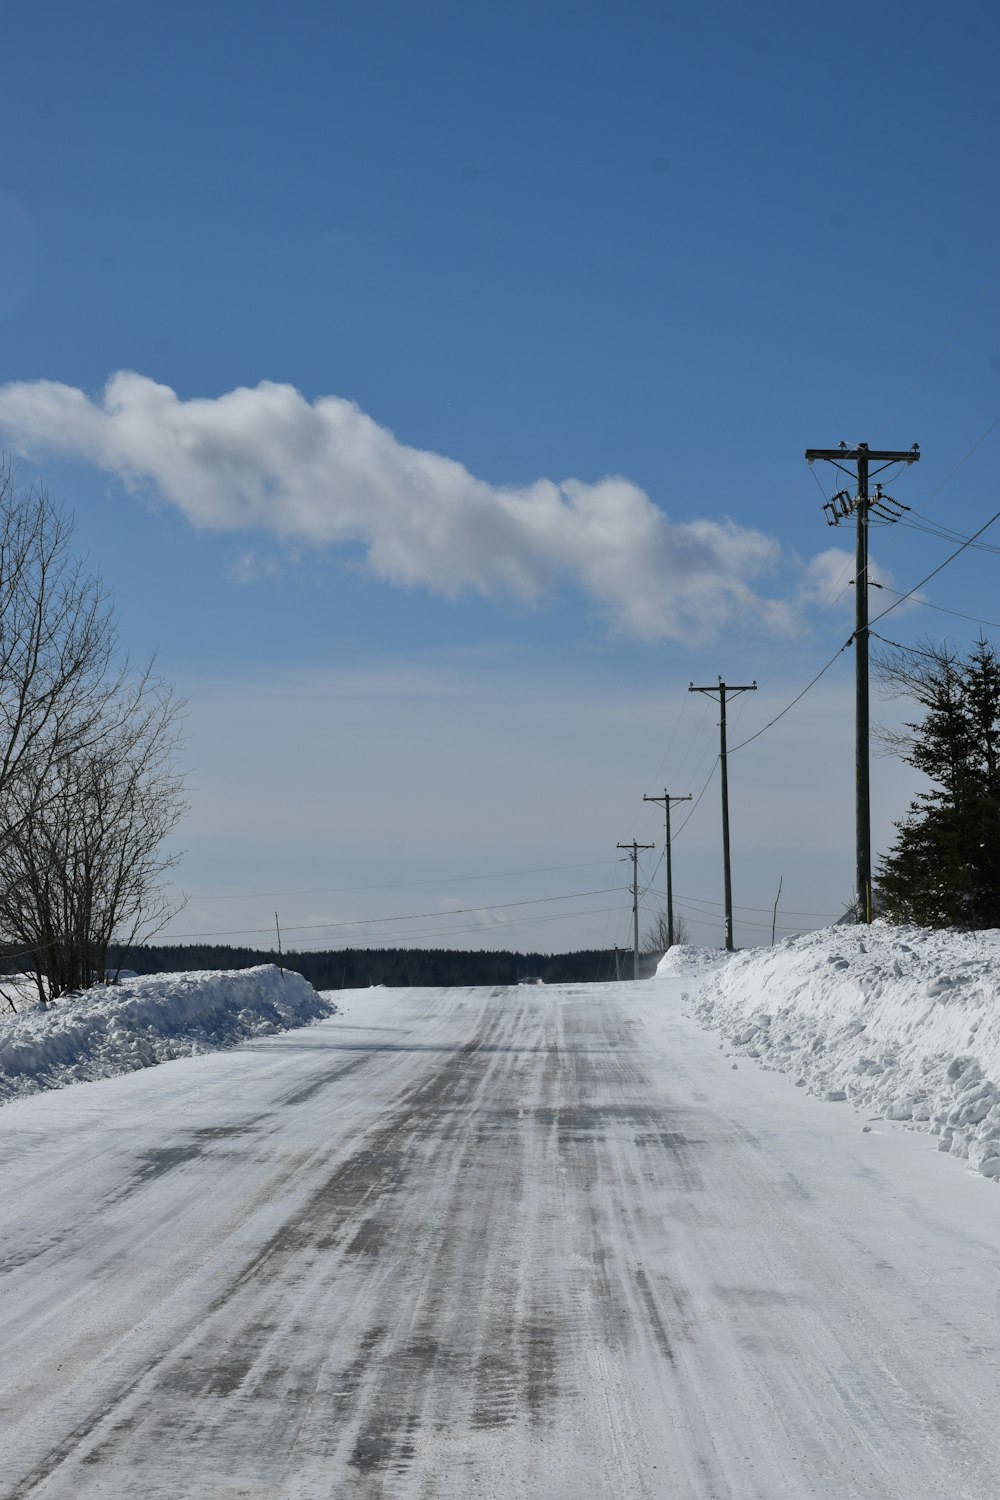 Un camino cubierto de nieve con líneas eléctricas y postes telefónicos